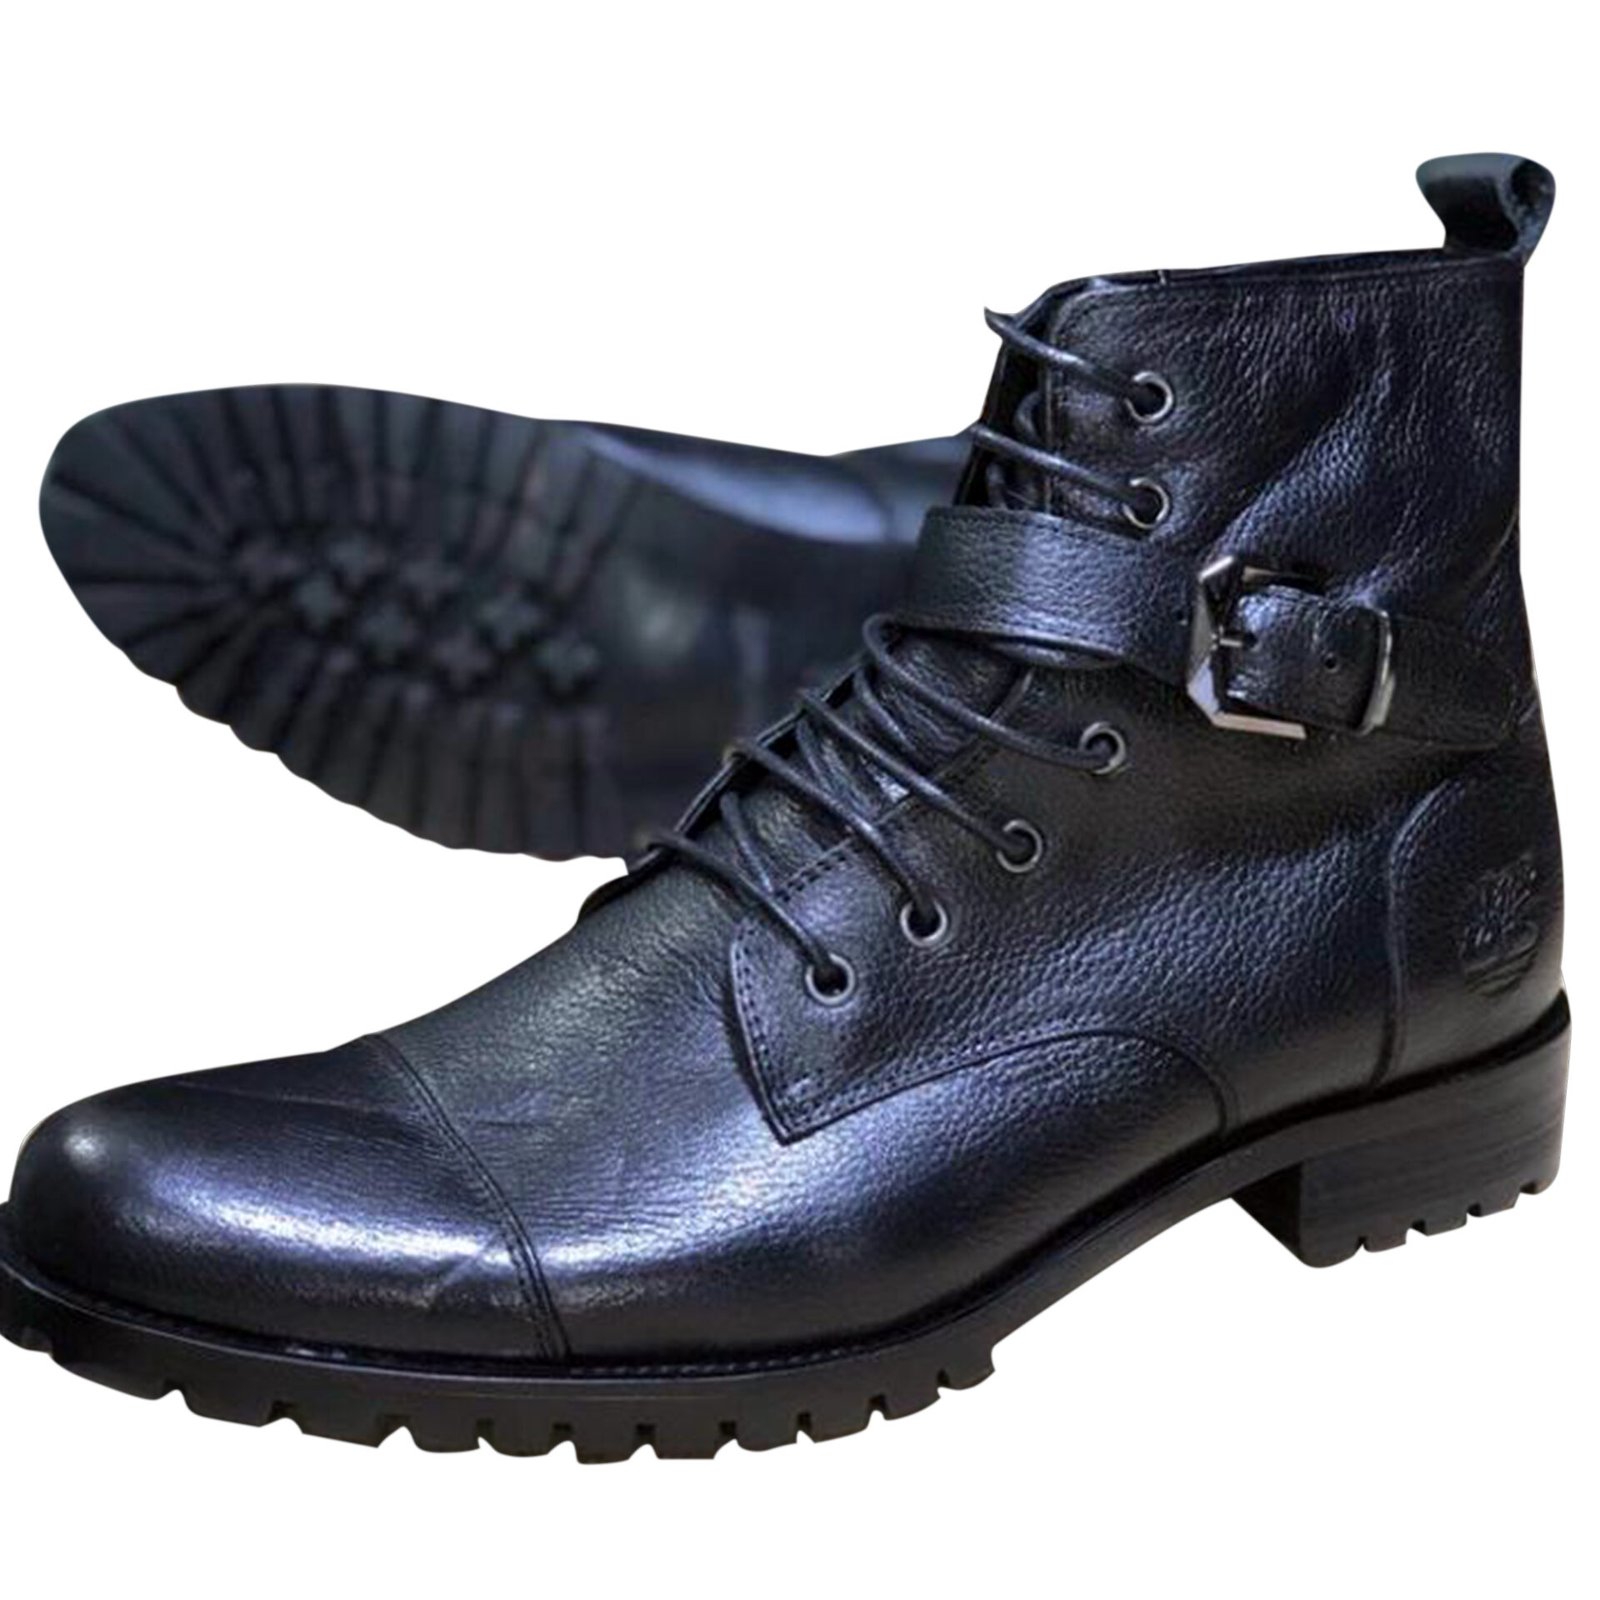 Buy Men's Boots Online in Uganda | discountduuka.com